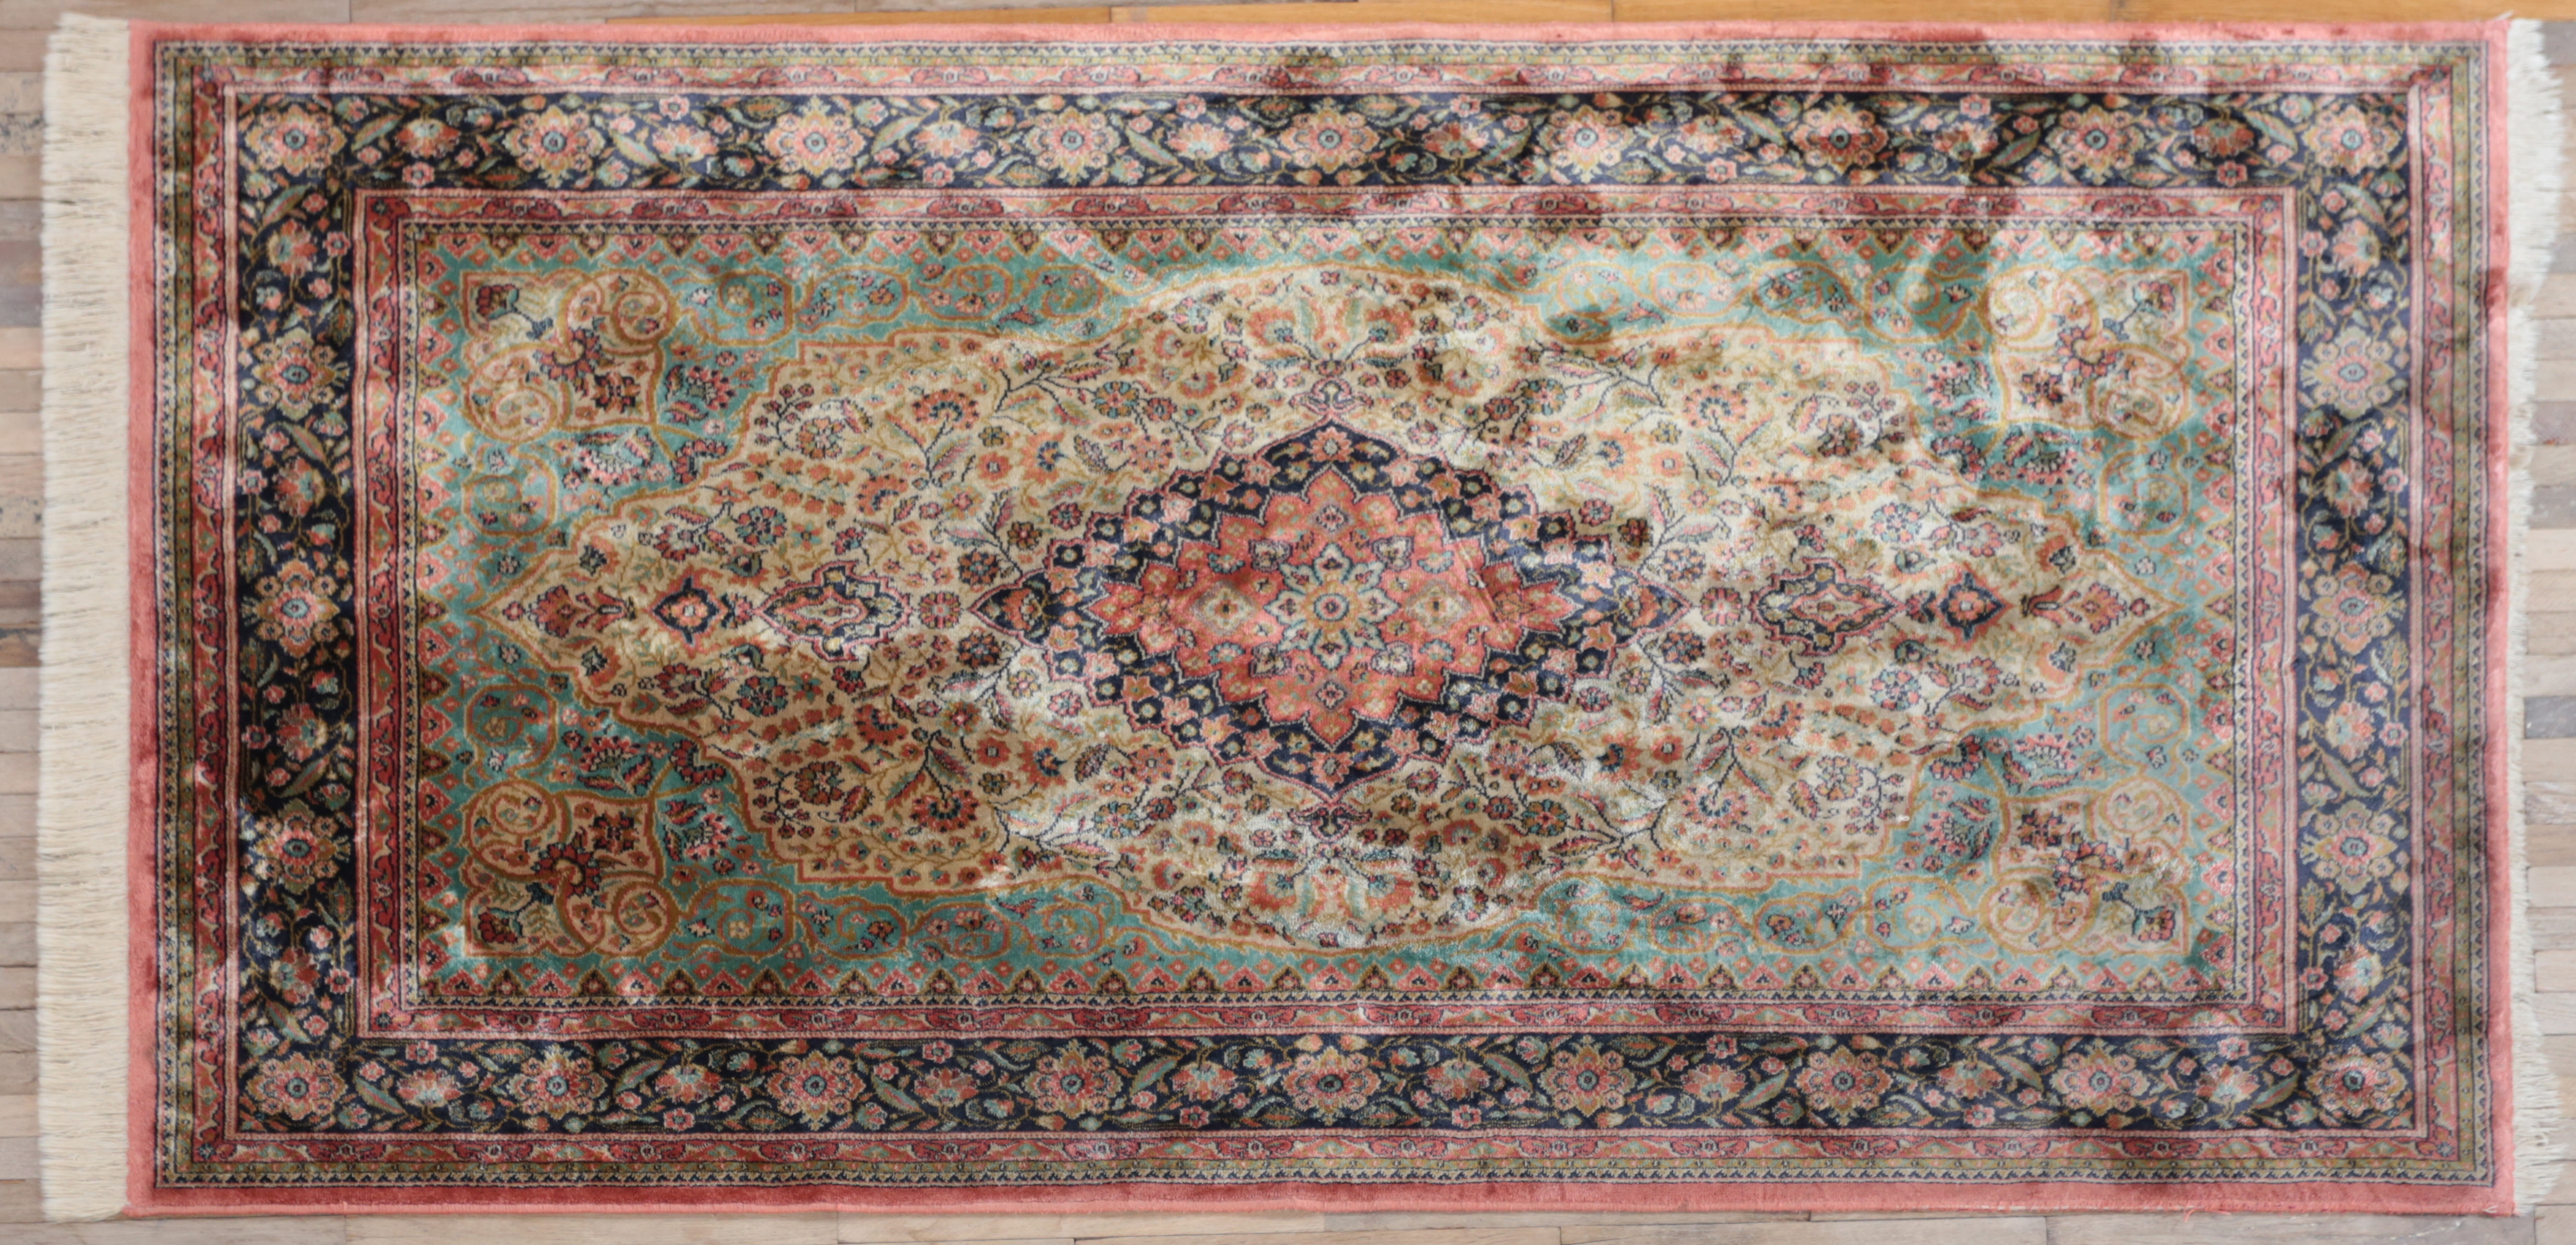 Velurový hedvábný koberec s certifikátem 182 x 105 cm